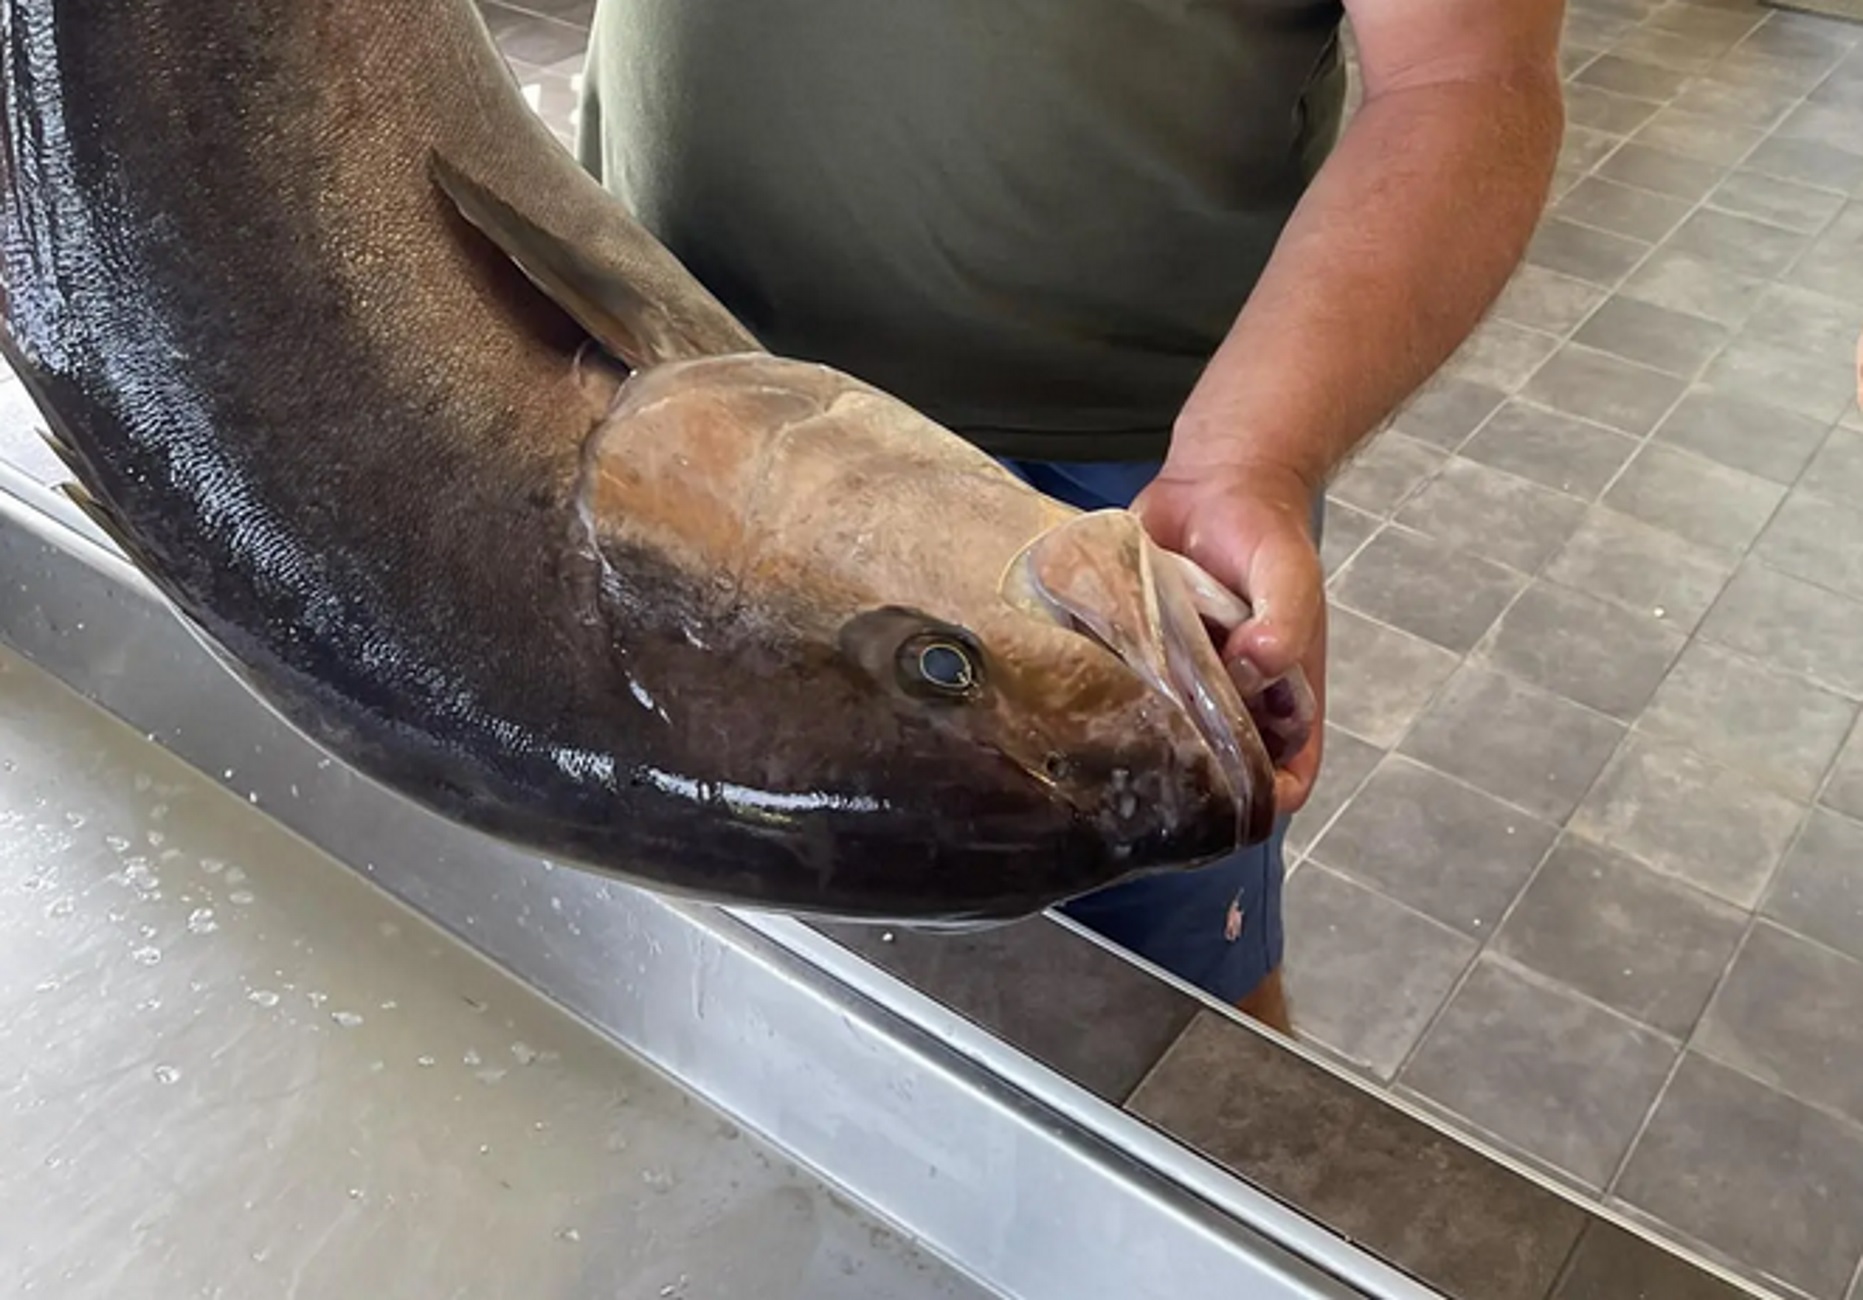 Λάρισα: Το μαγιάτικο ψάρι που έπιασε ζύγιζε 30 ολόκληρα κιλά – Ουρές από πελάτες για να το γευτούν